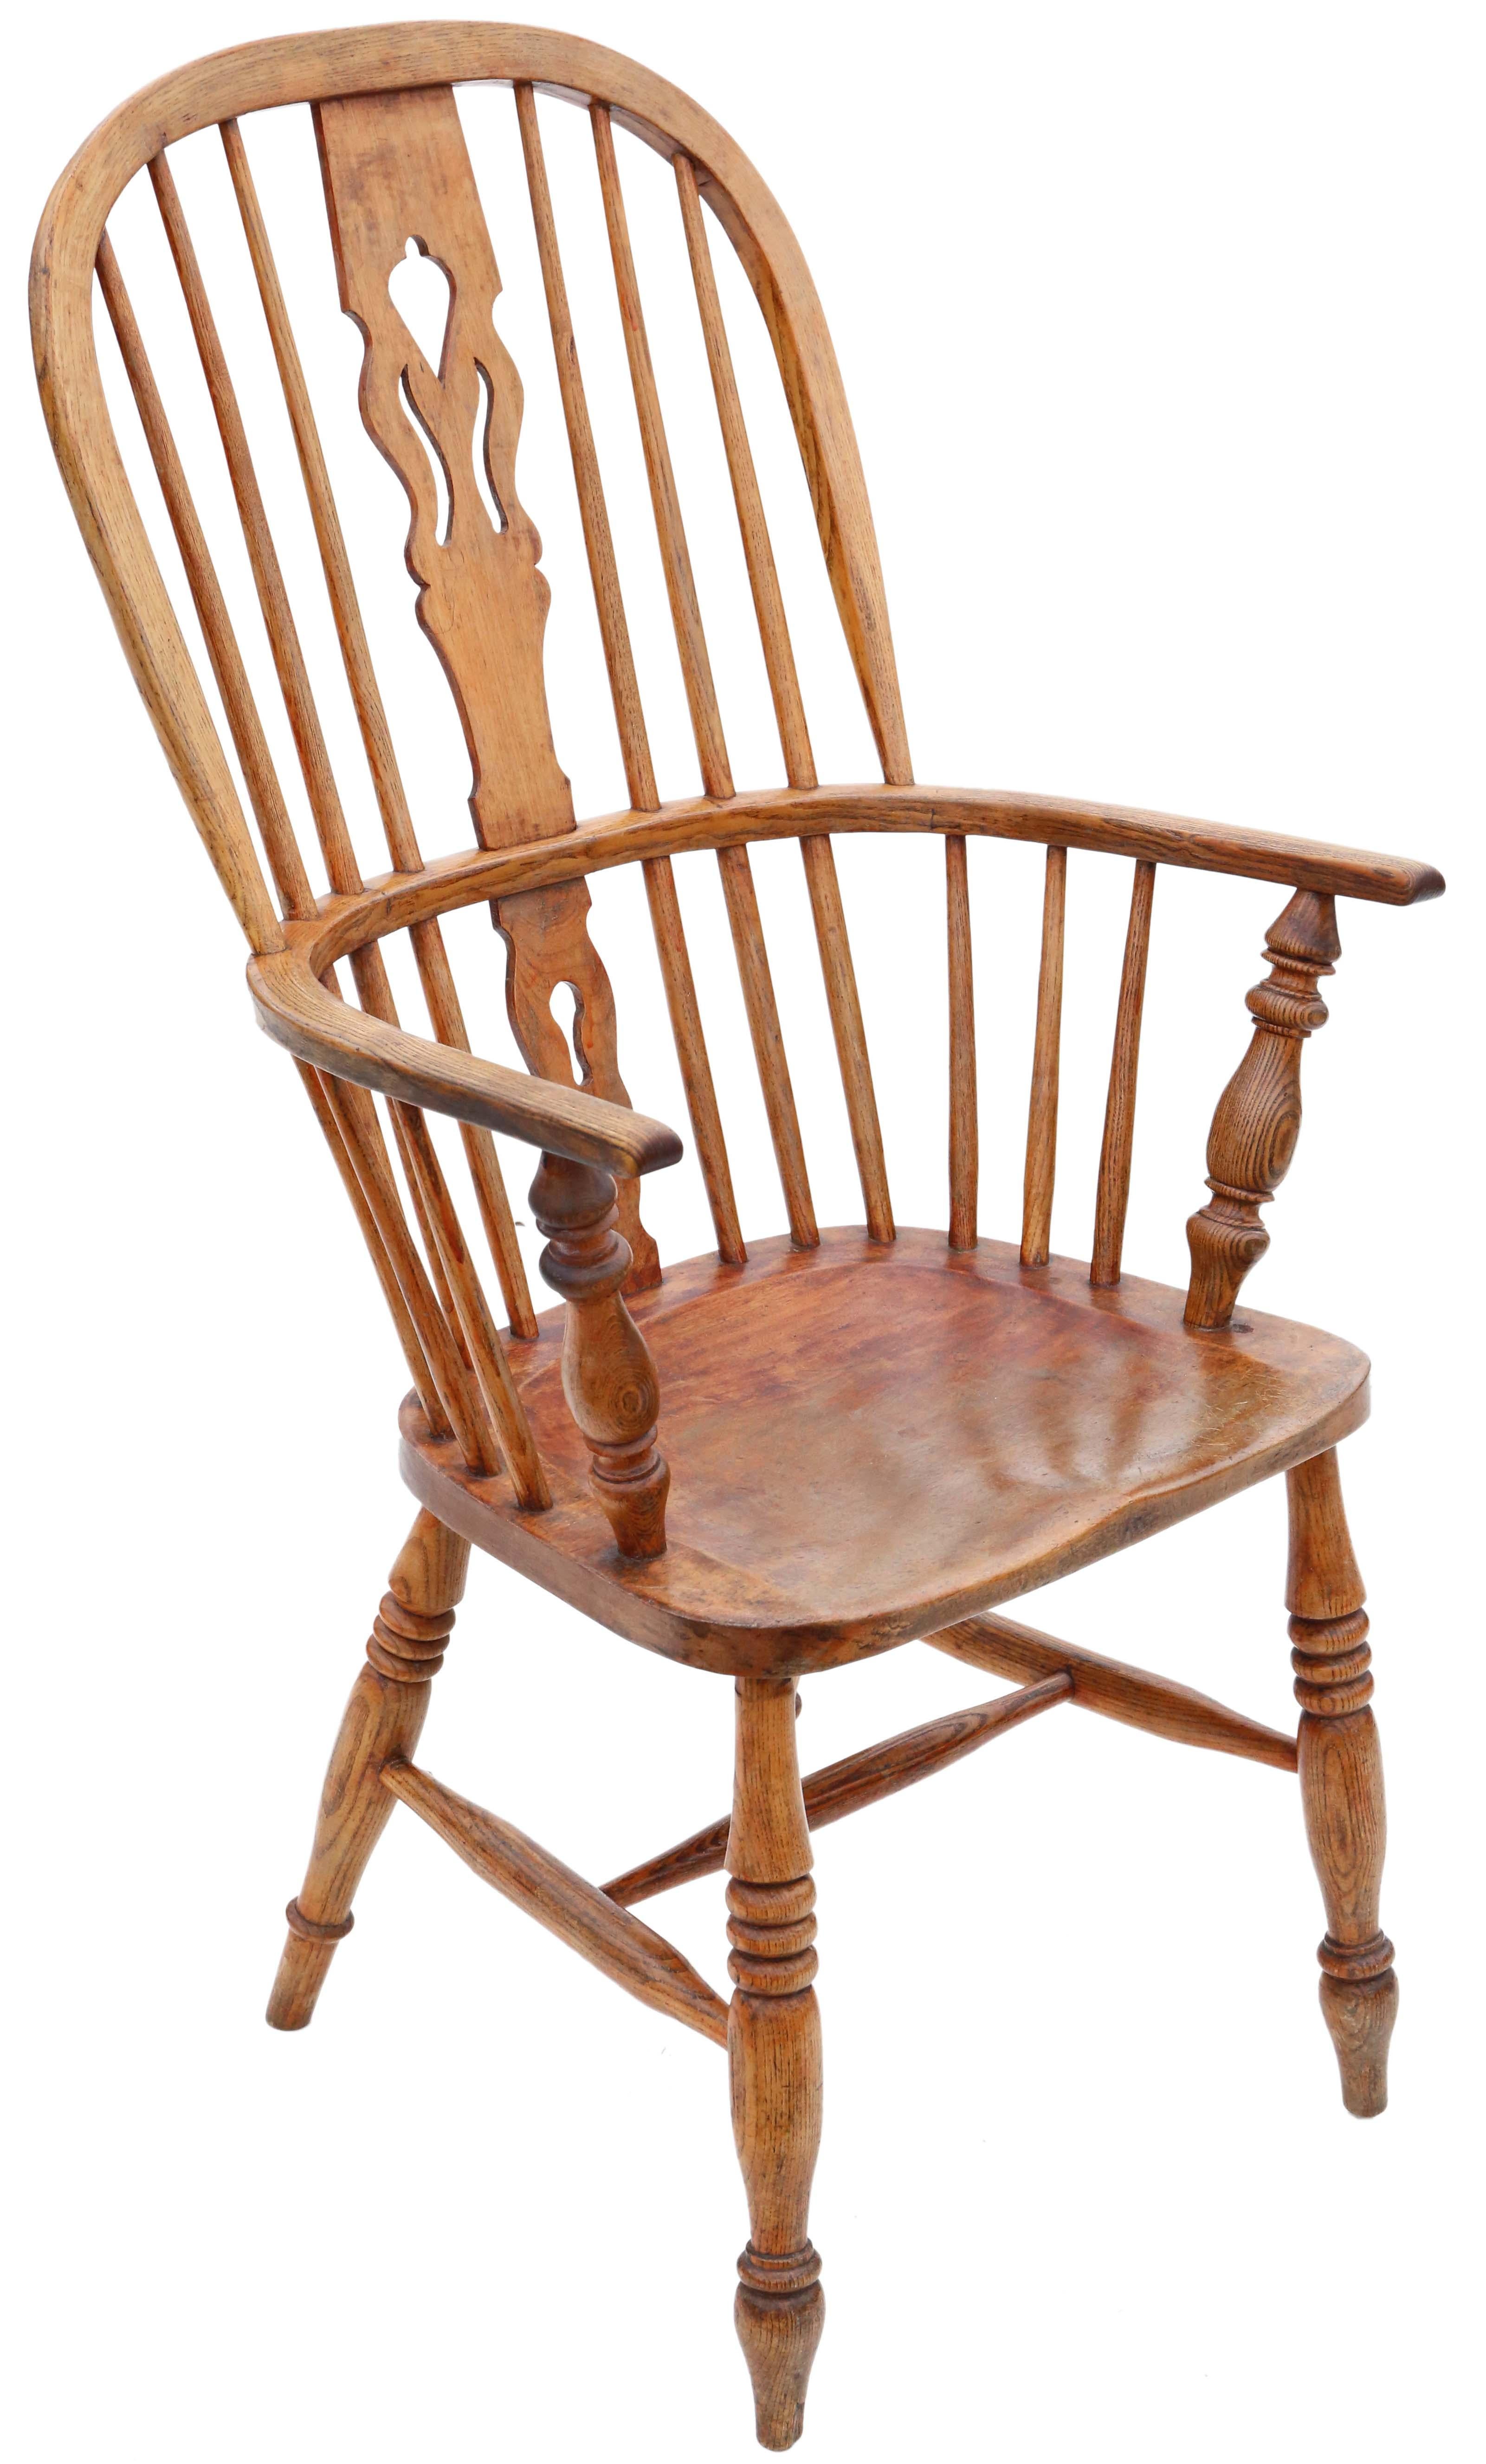 Antike Qualität 19. Jahrhundert Esche und Ulme Windsor Stuhl Esstisch Sessel. Seltene helle Farbe.

Solide und stark, ohne lose Verbindungen und ohne Holzwurm. Voller Alter, Charakter und Charme.

An der richtigen Stelle würde es großartig